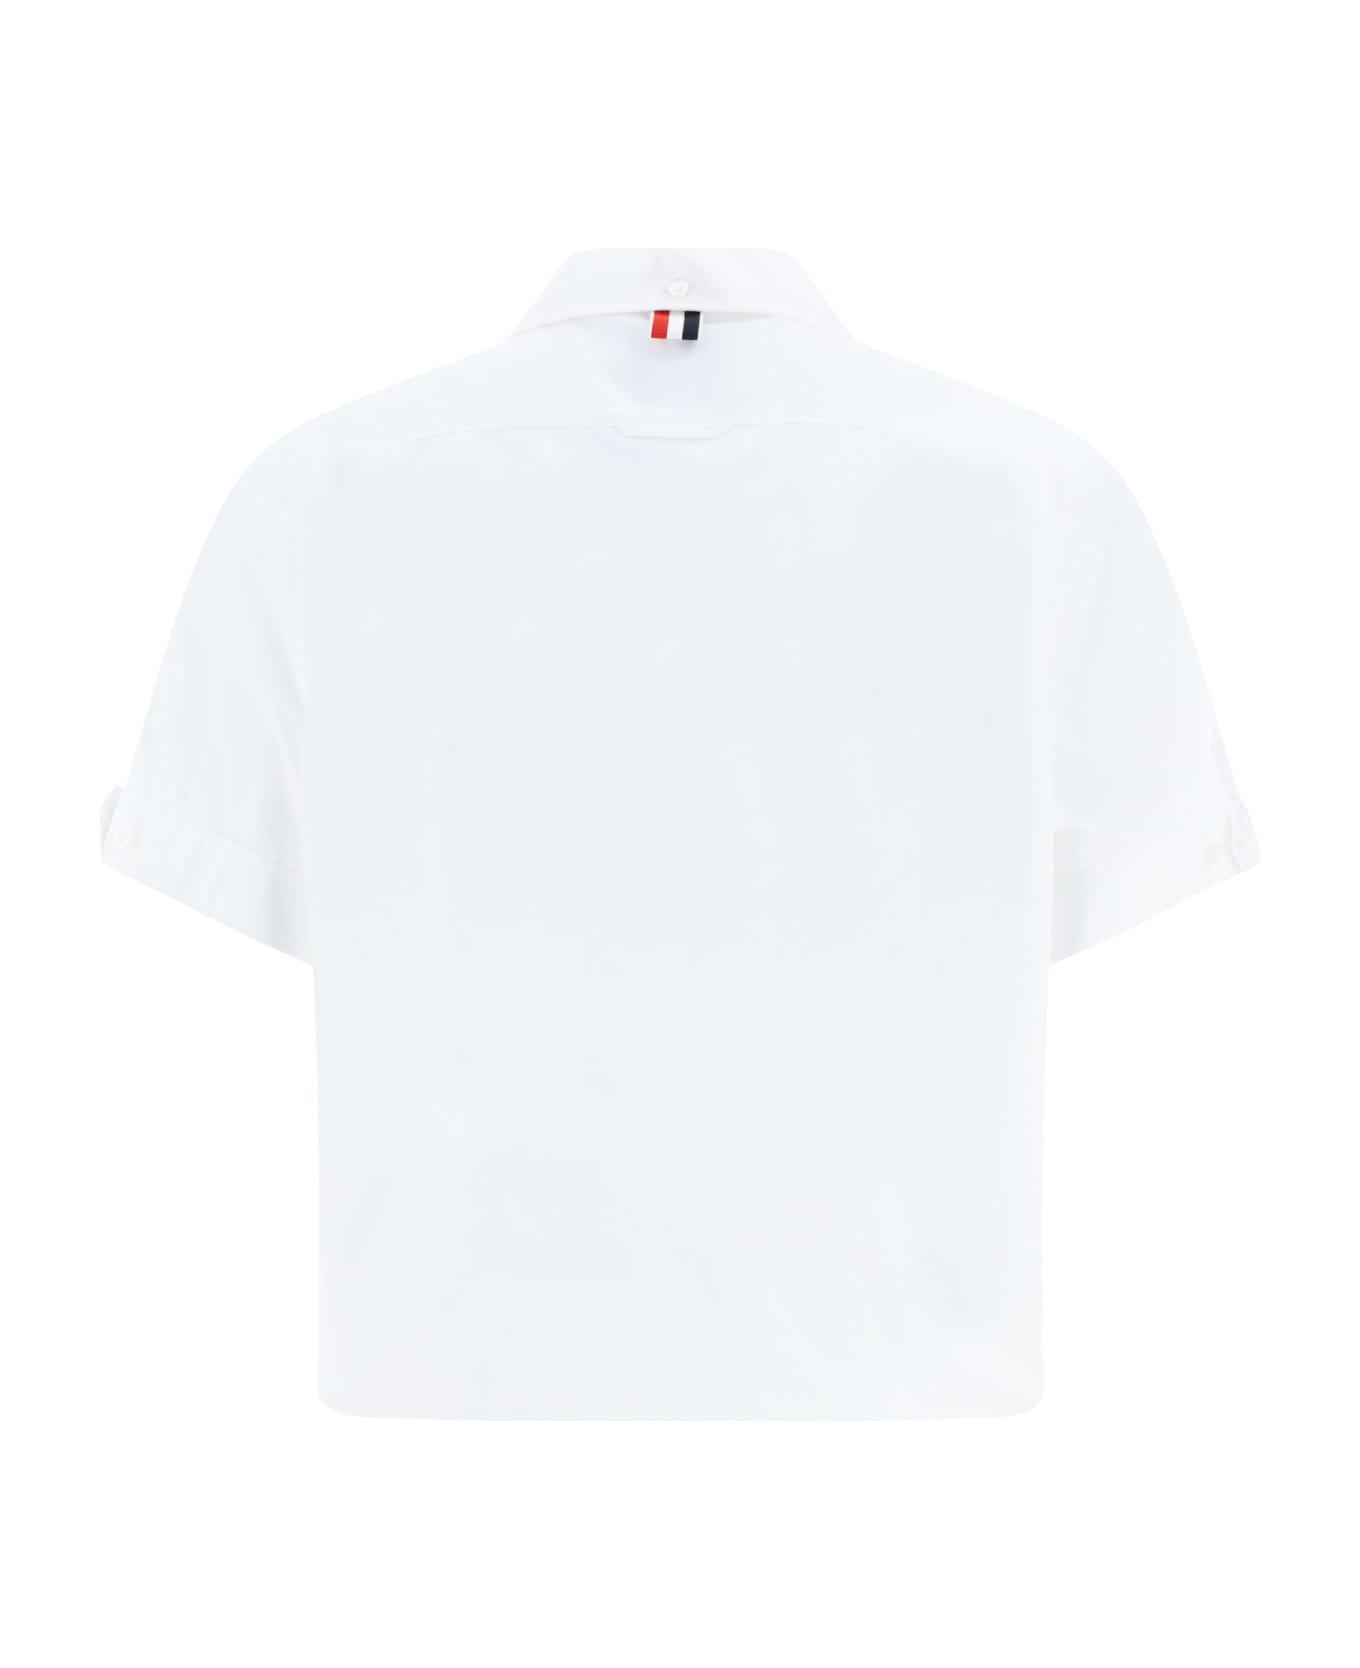 Thom Browne Bowling Shirt - White